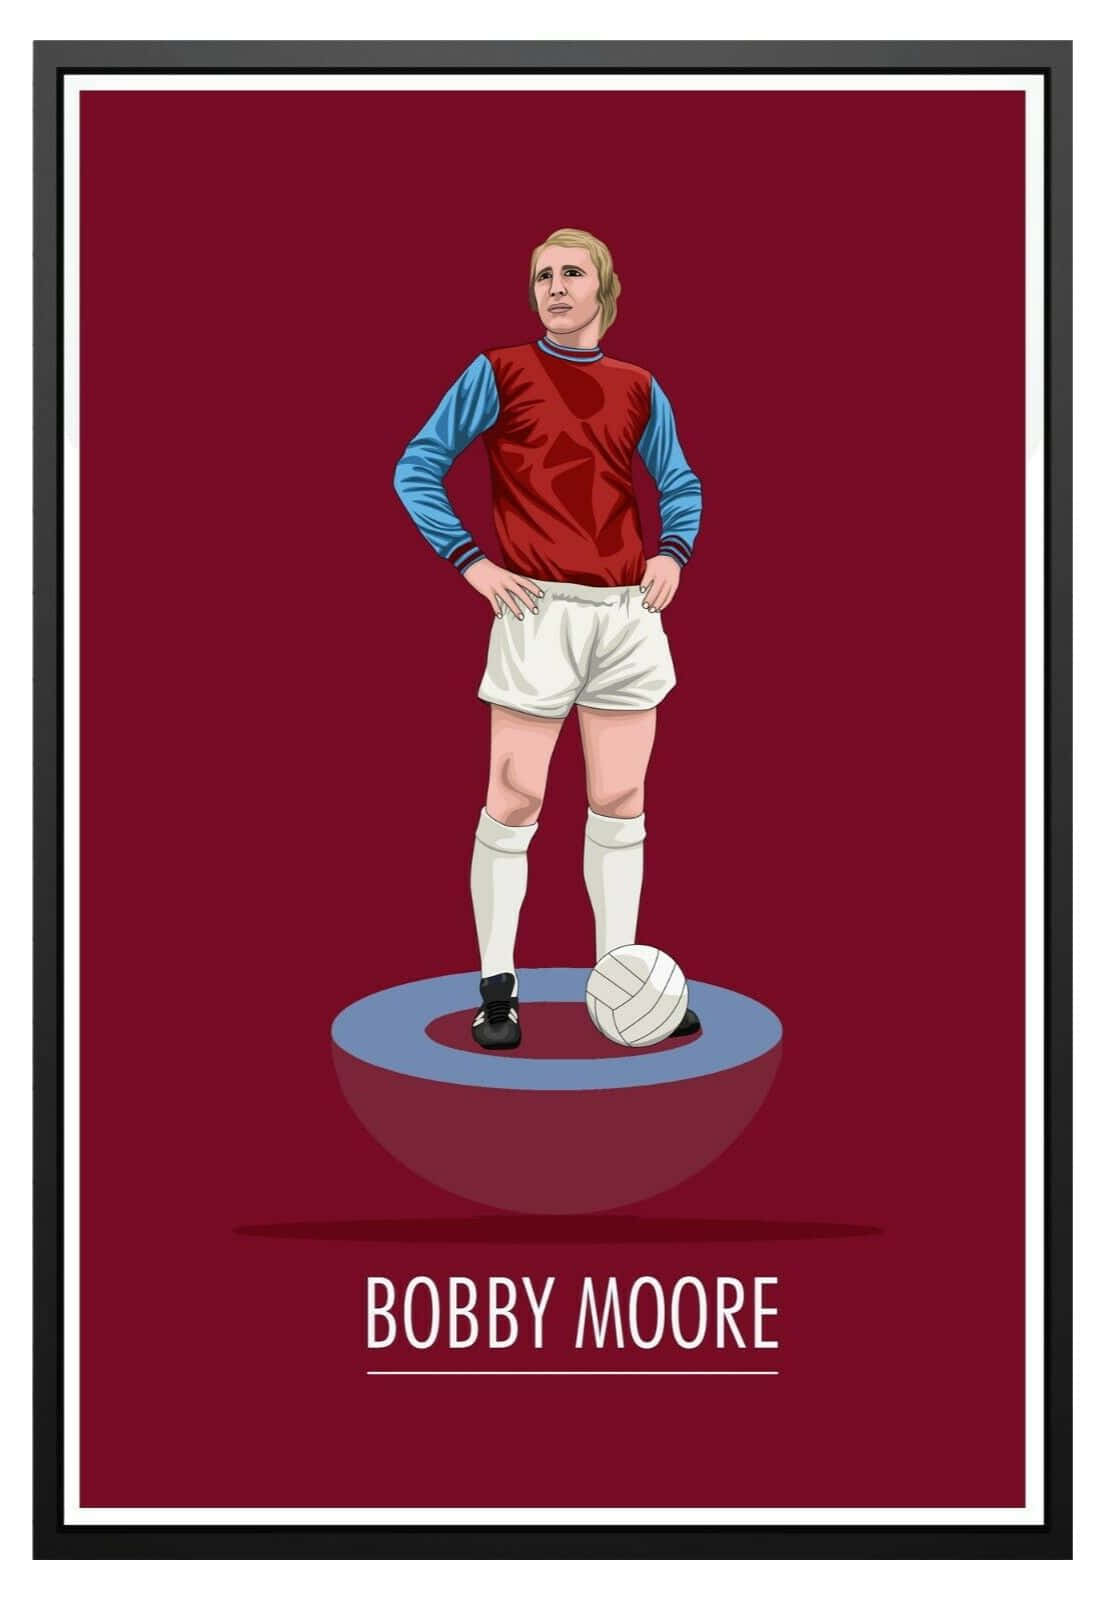 Fodboldatlet Bobby Moore bevæger sig ivrigt fremad ned ad banen. Wallpaper